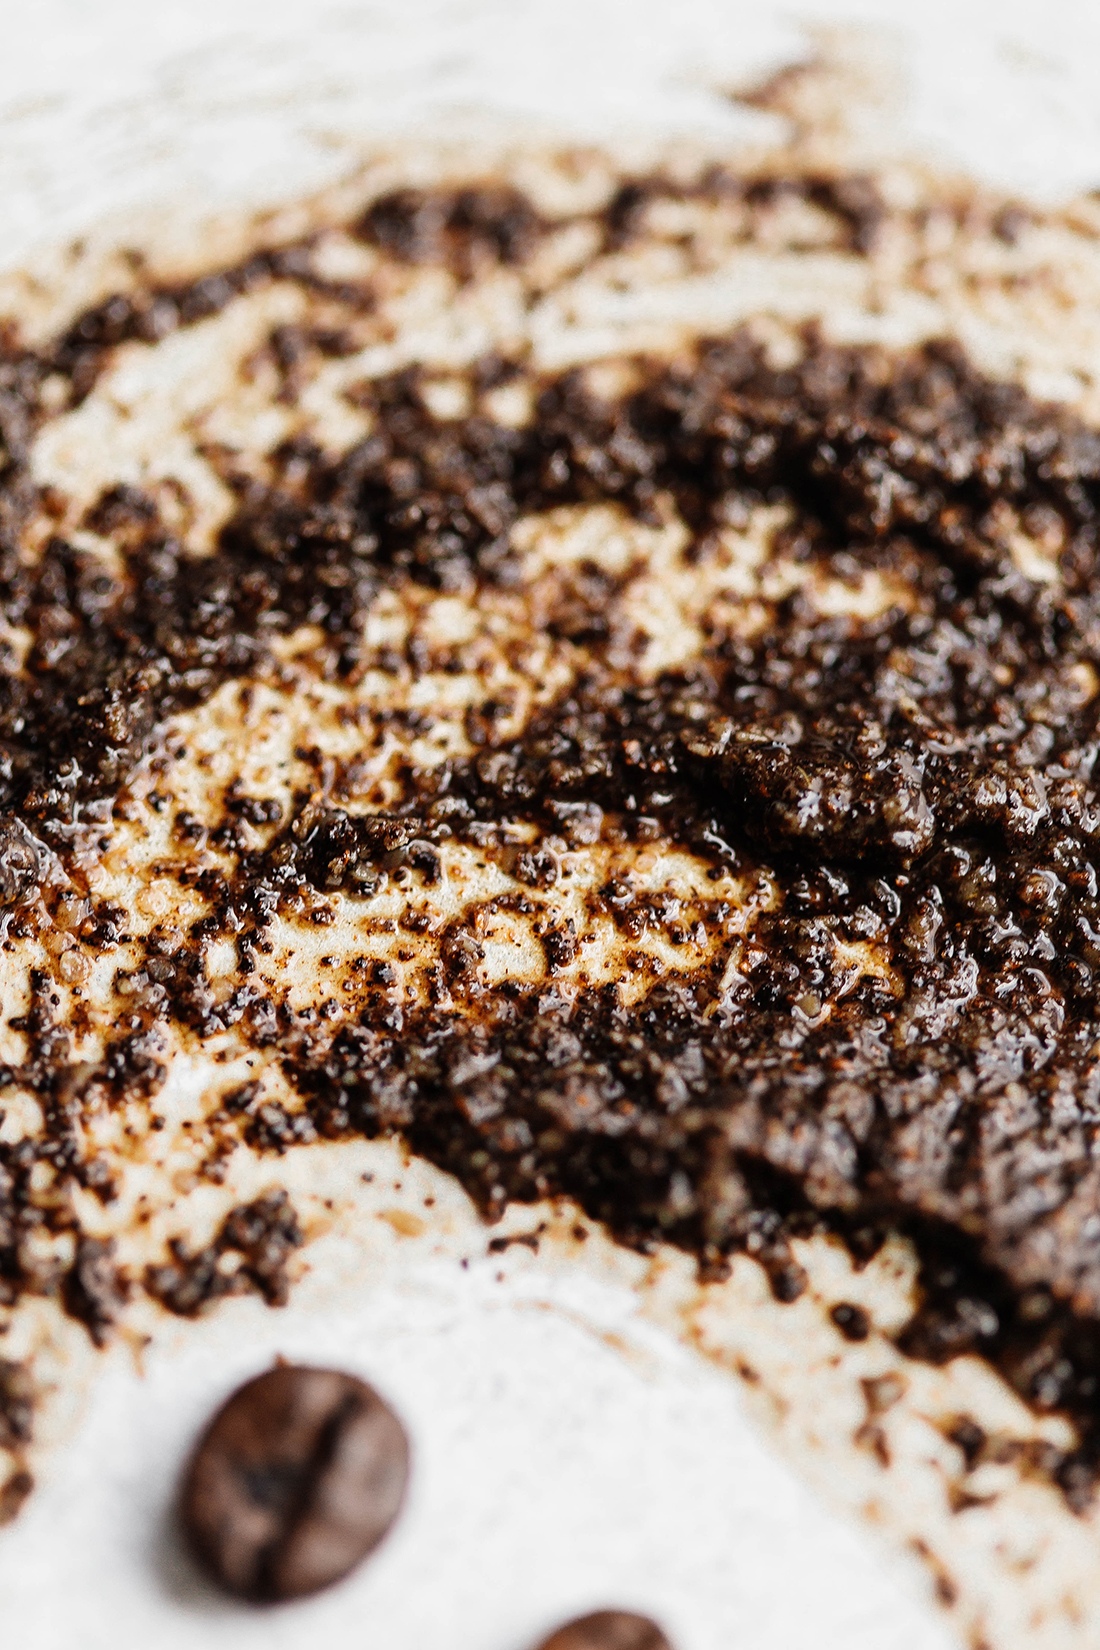 картинка cacao, отшелушивающая масляная смесь для тела, 300 гр  